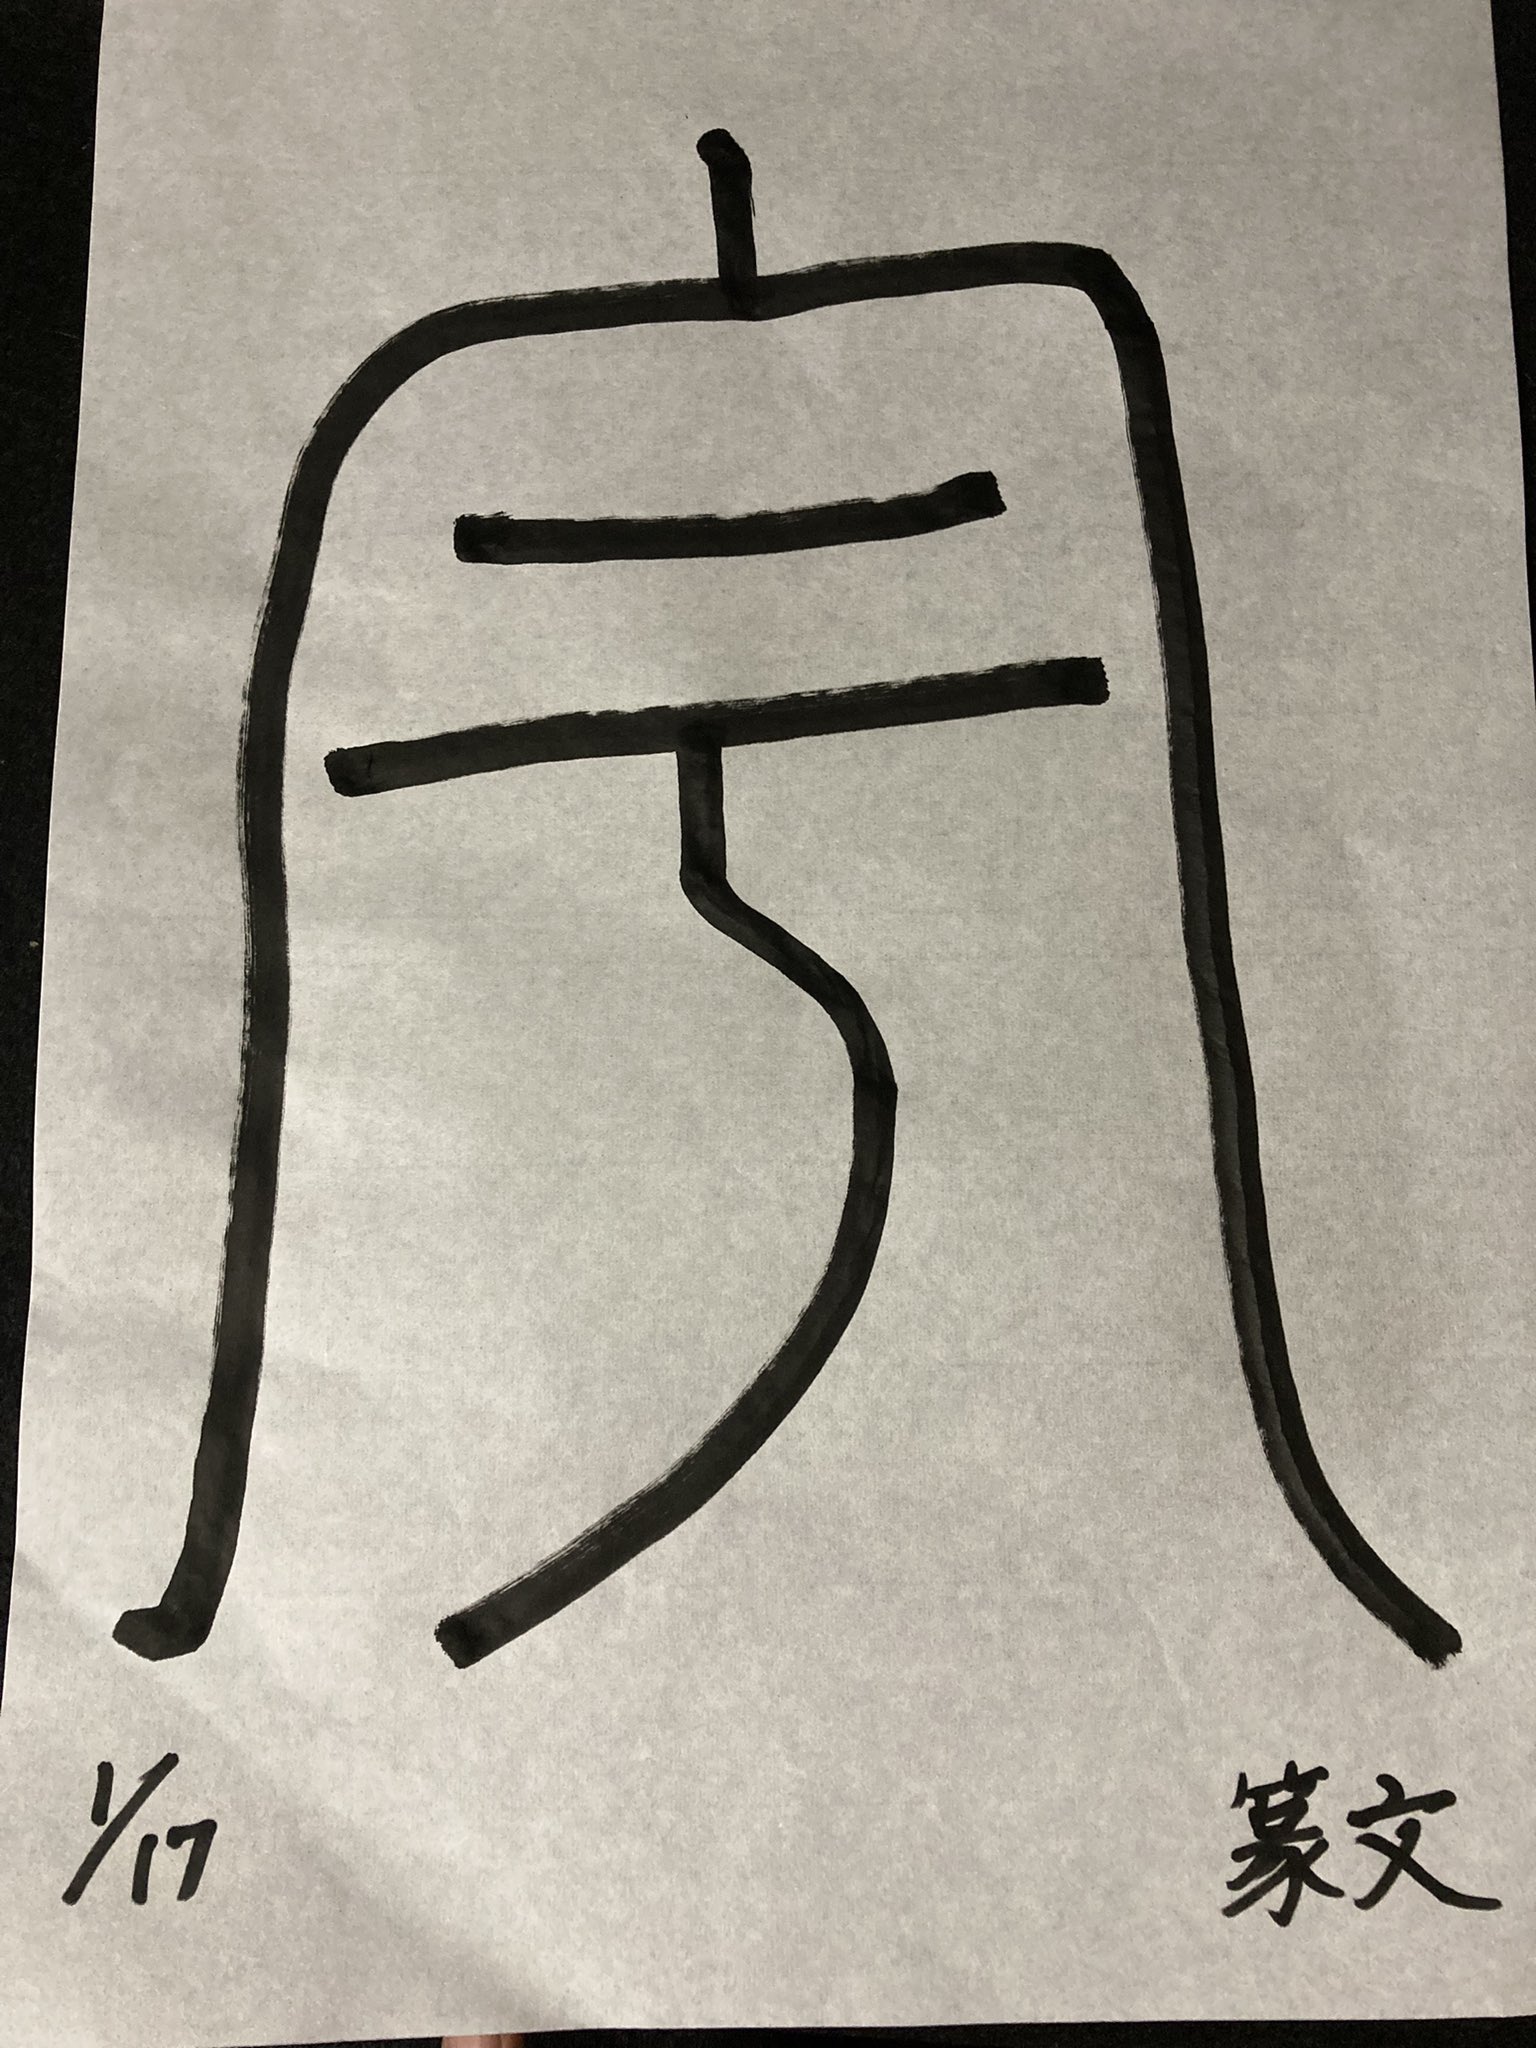 Chika Odani 和工房明月 朝の署名部 1 17 くもりそら のびのびかいた署名 一文字は 宇 軒とか家とかの意味 他に 天や空 無限の空間 ところ あたり こころ 魂 精神や器量などの意味もあるらしい 幅広く意味を持つ漢字だった 知らないことが